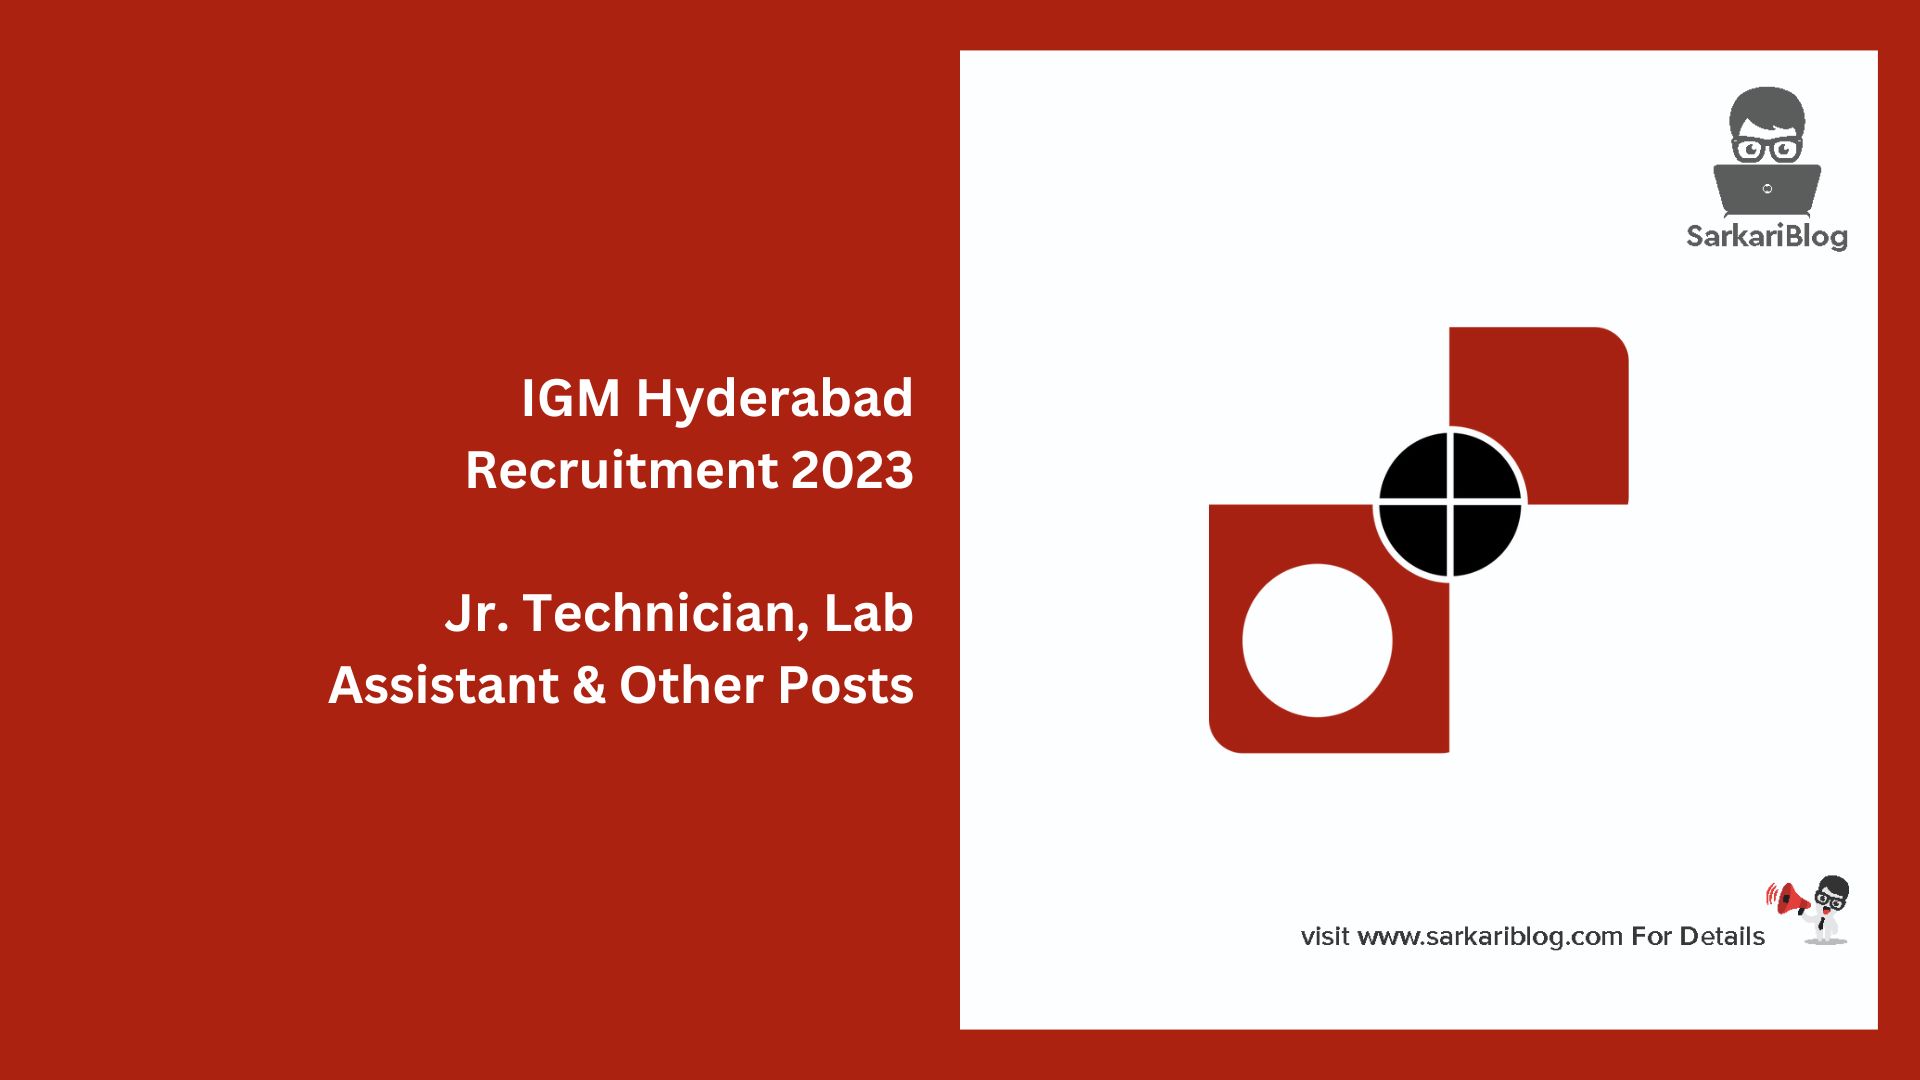 IGM Hyderabad Recruitment 2023